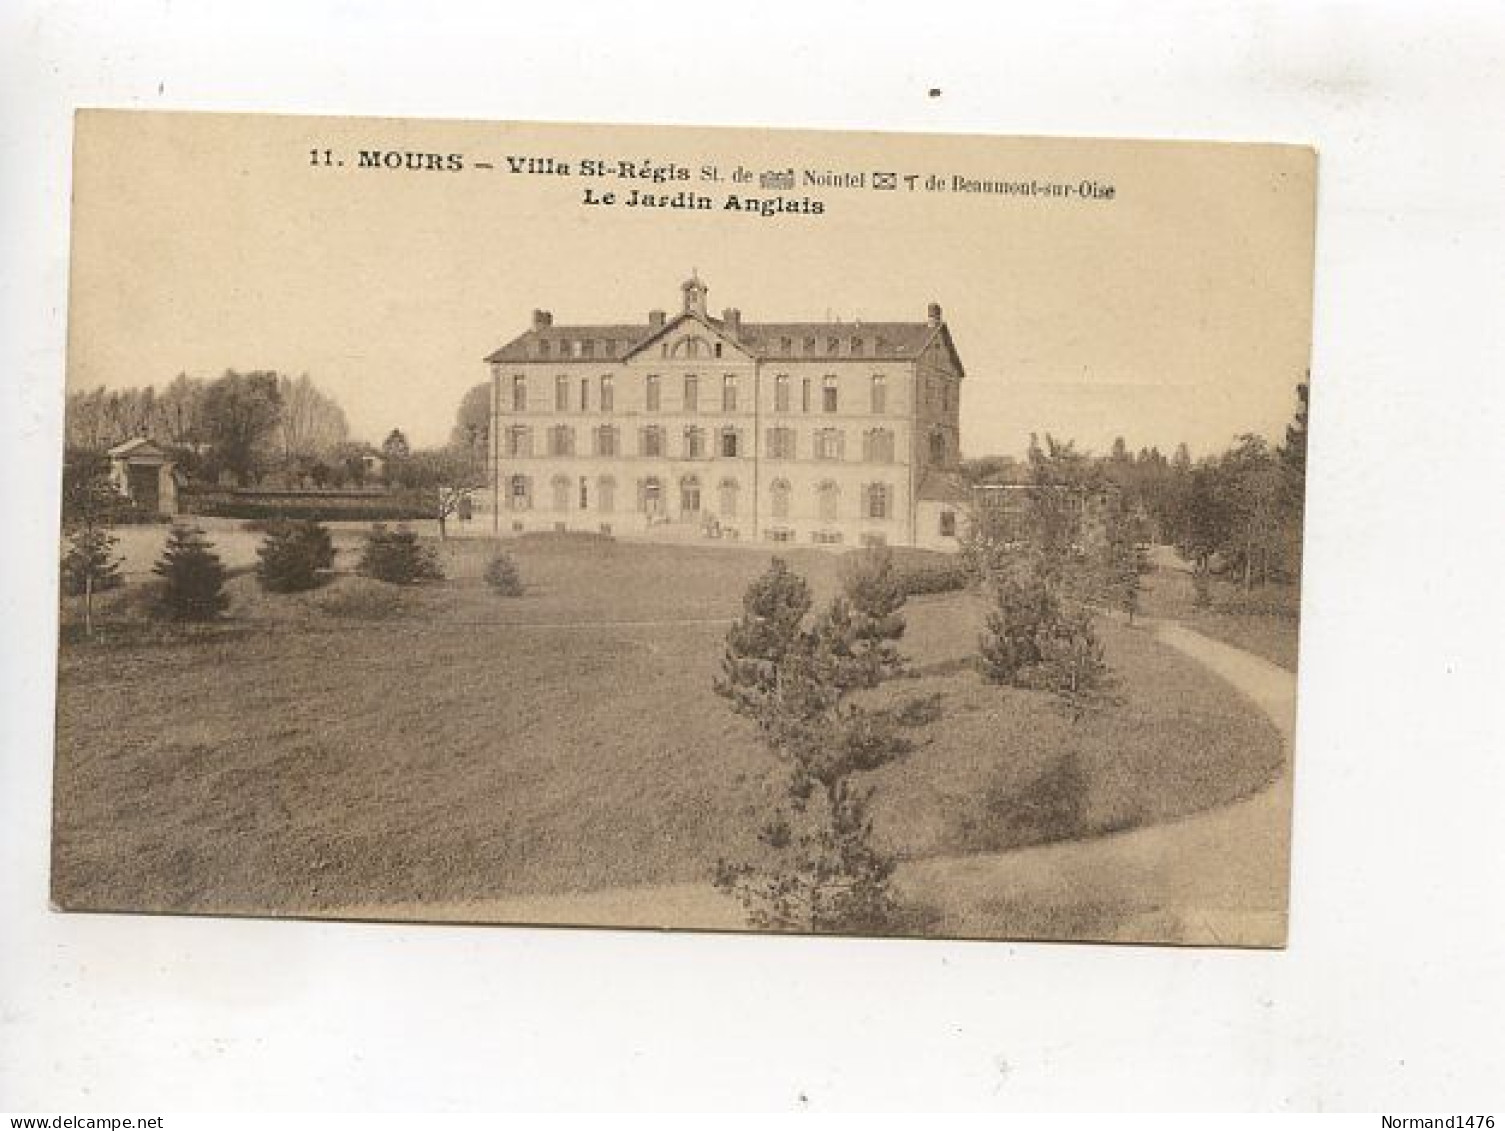 Villa St Regis - Mours